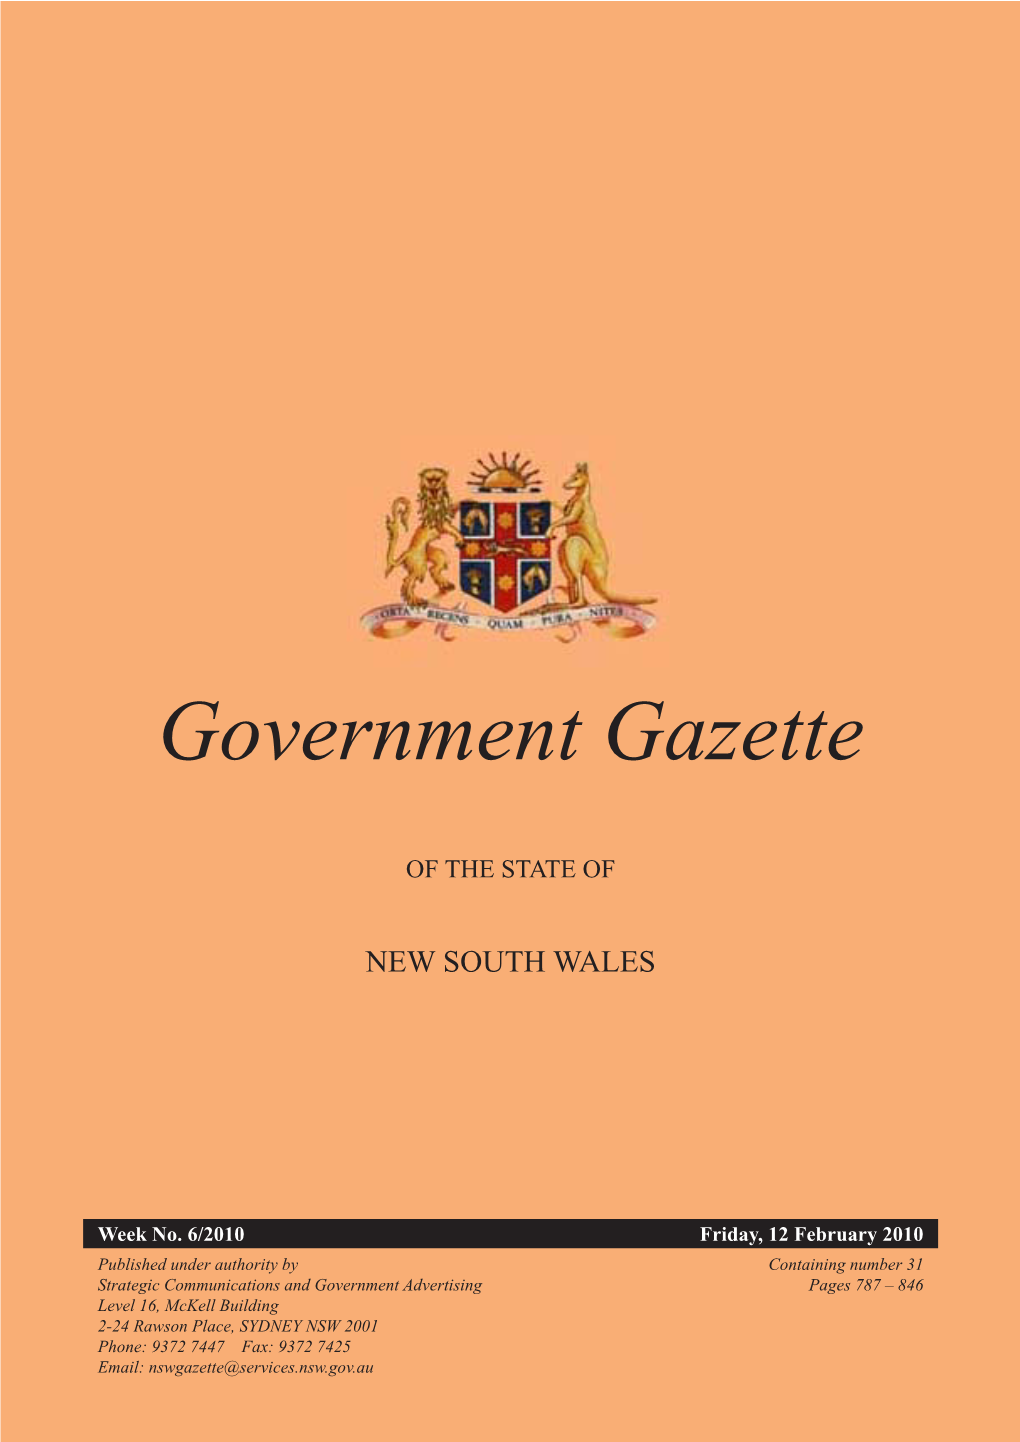 Government Gazette of 12 February 2010